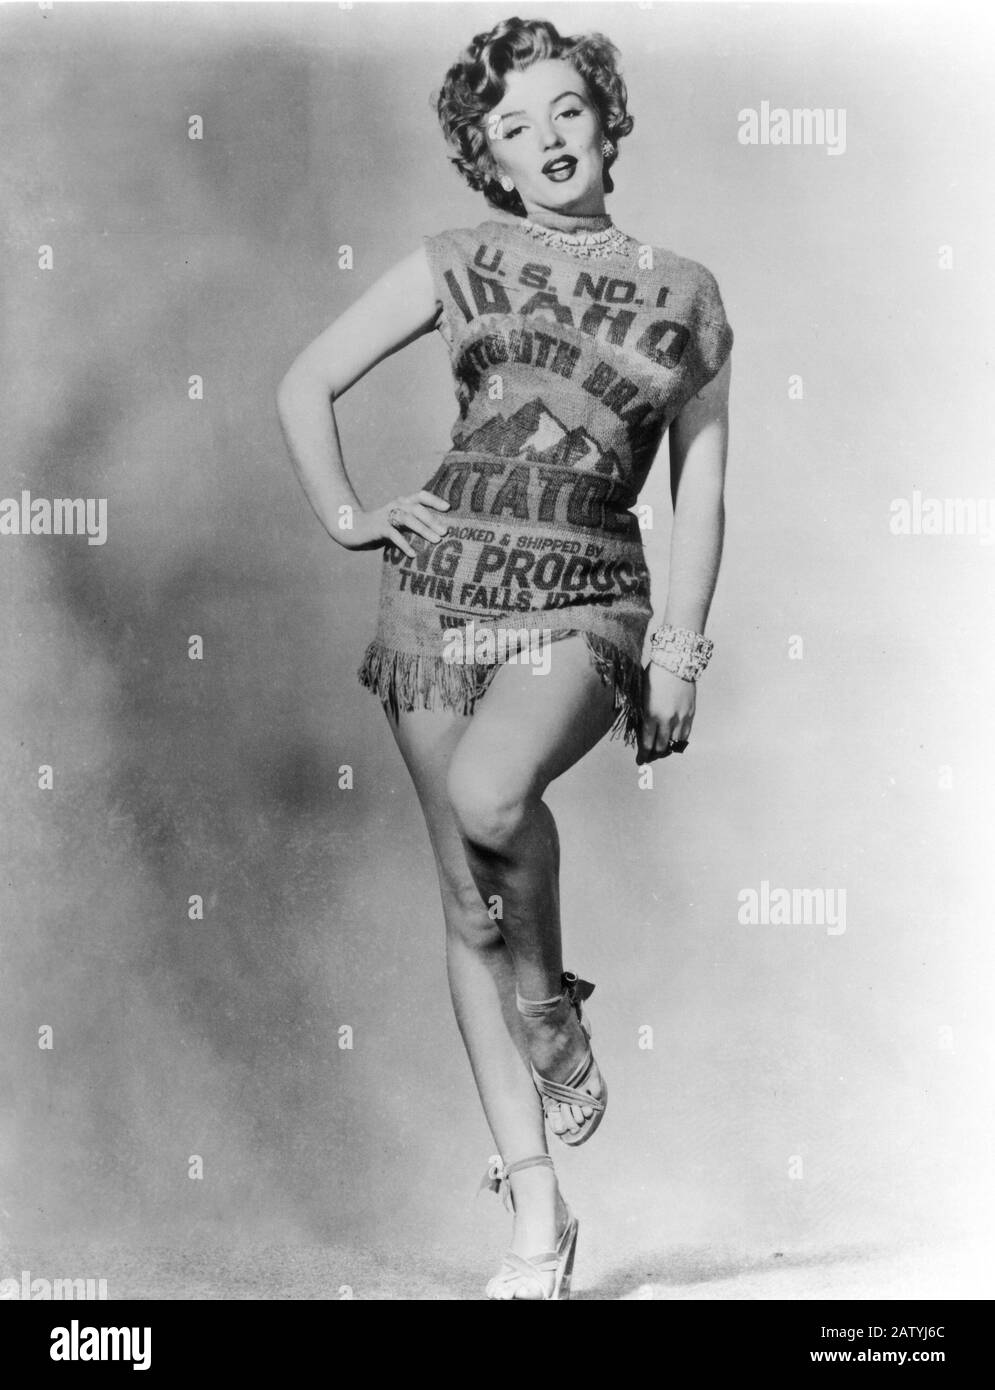 1951 , dicembre : MARILYN MONROE vestito in un sacco di patate , 20 °  secolo Fox publicity Still - PIN UP - POSA LEGGY - SANDALI - SANDALI -  JEWEL - J Foto stock - Alamy